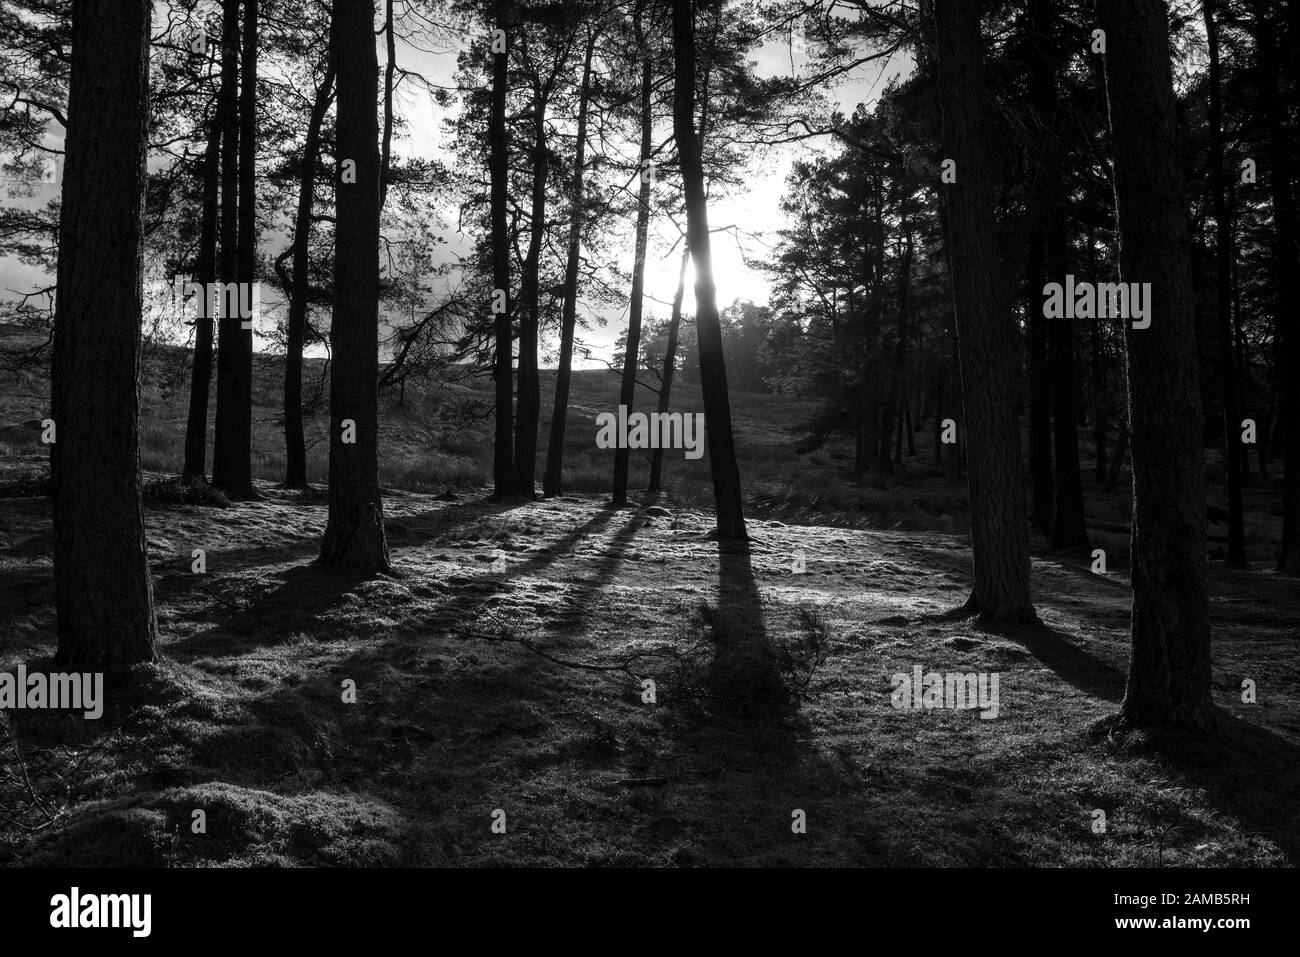 image en noir et blanc du soleil d'hiver bas filtrée à travers un stand d'arbres avec des arbres maintenus en silhouette et avec des ombres sombres Banque D'Images